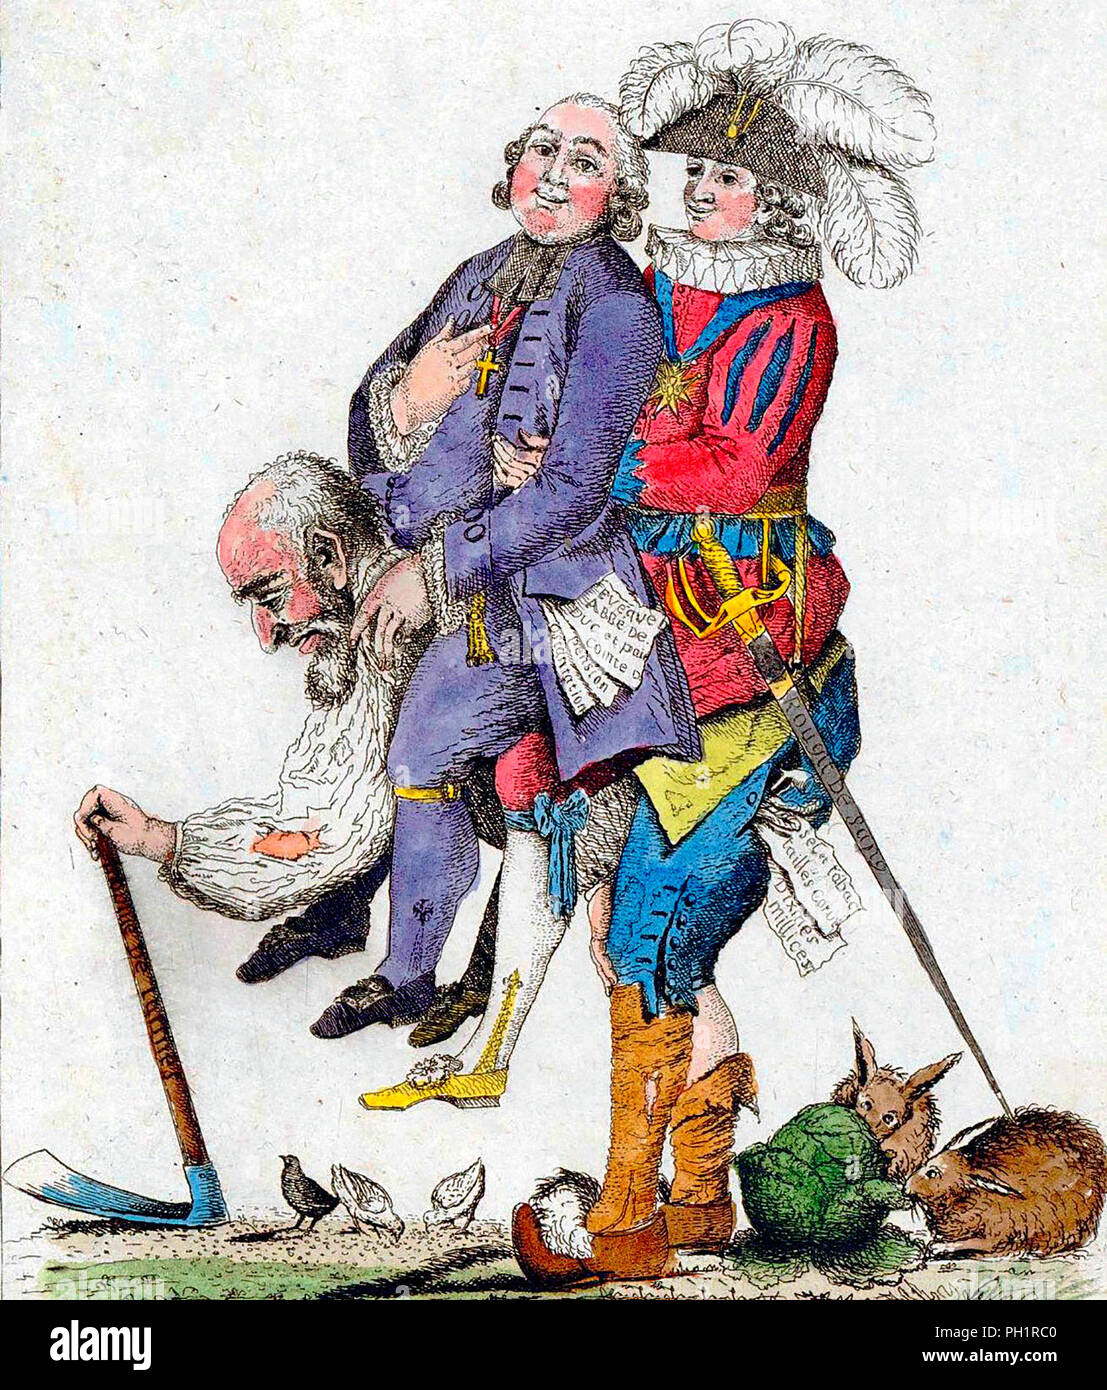 "Man sollte hoffen, dass dieses Spiel bald vorbei sein wird." Die dritte Immobilien Durchführung der Klerus und der Adel auf dem Rücken. Frankreich, 1789 Stockfoto